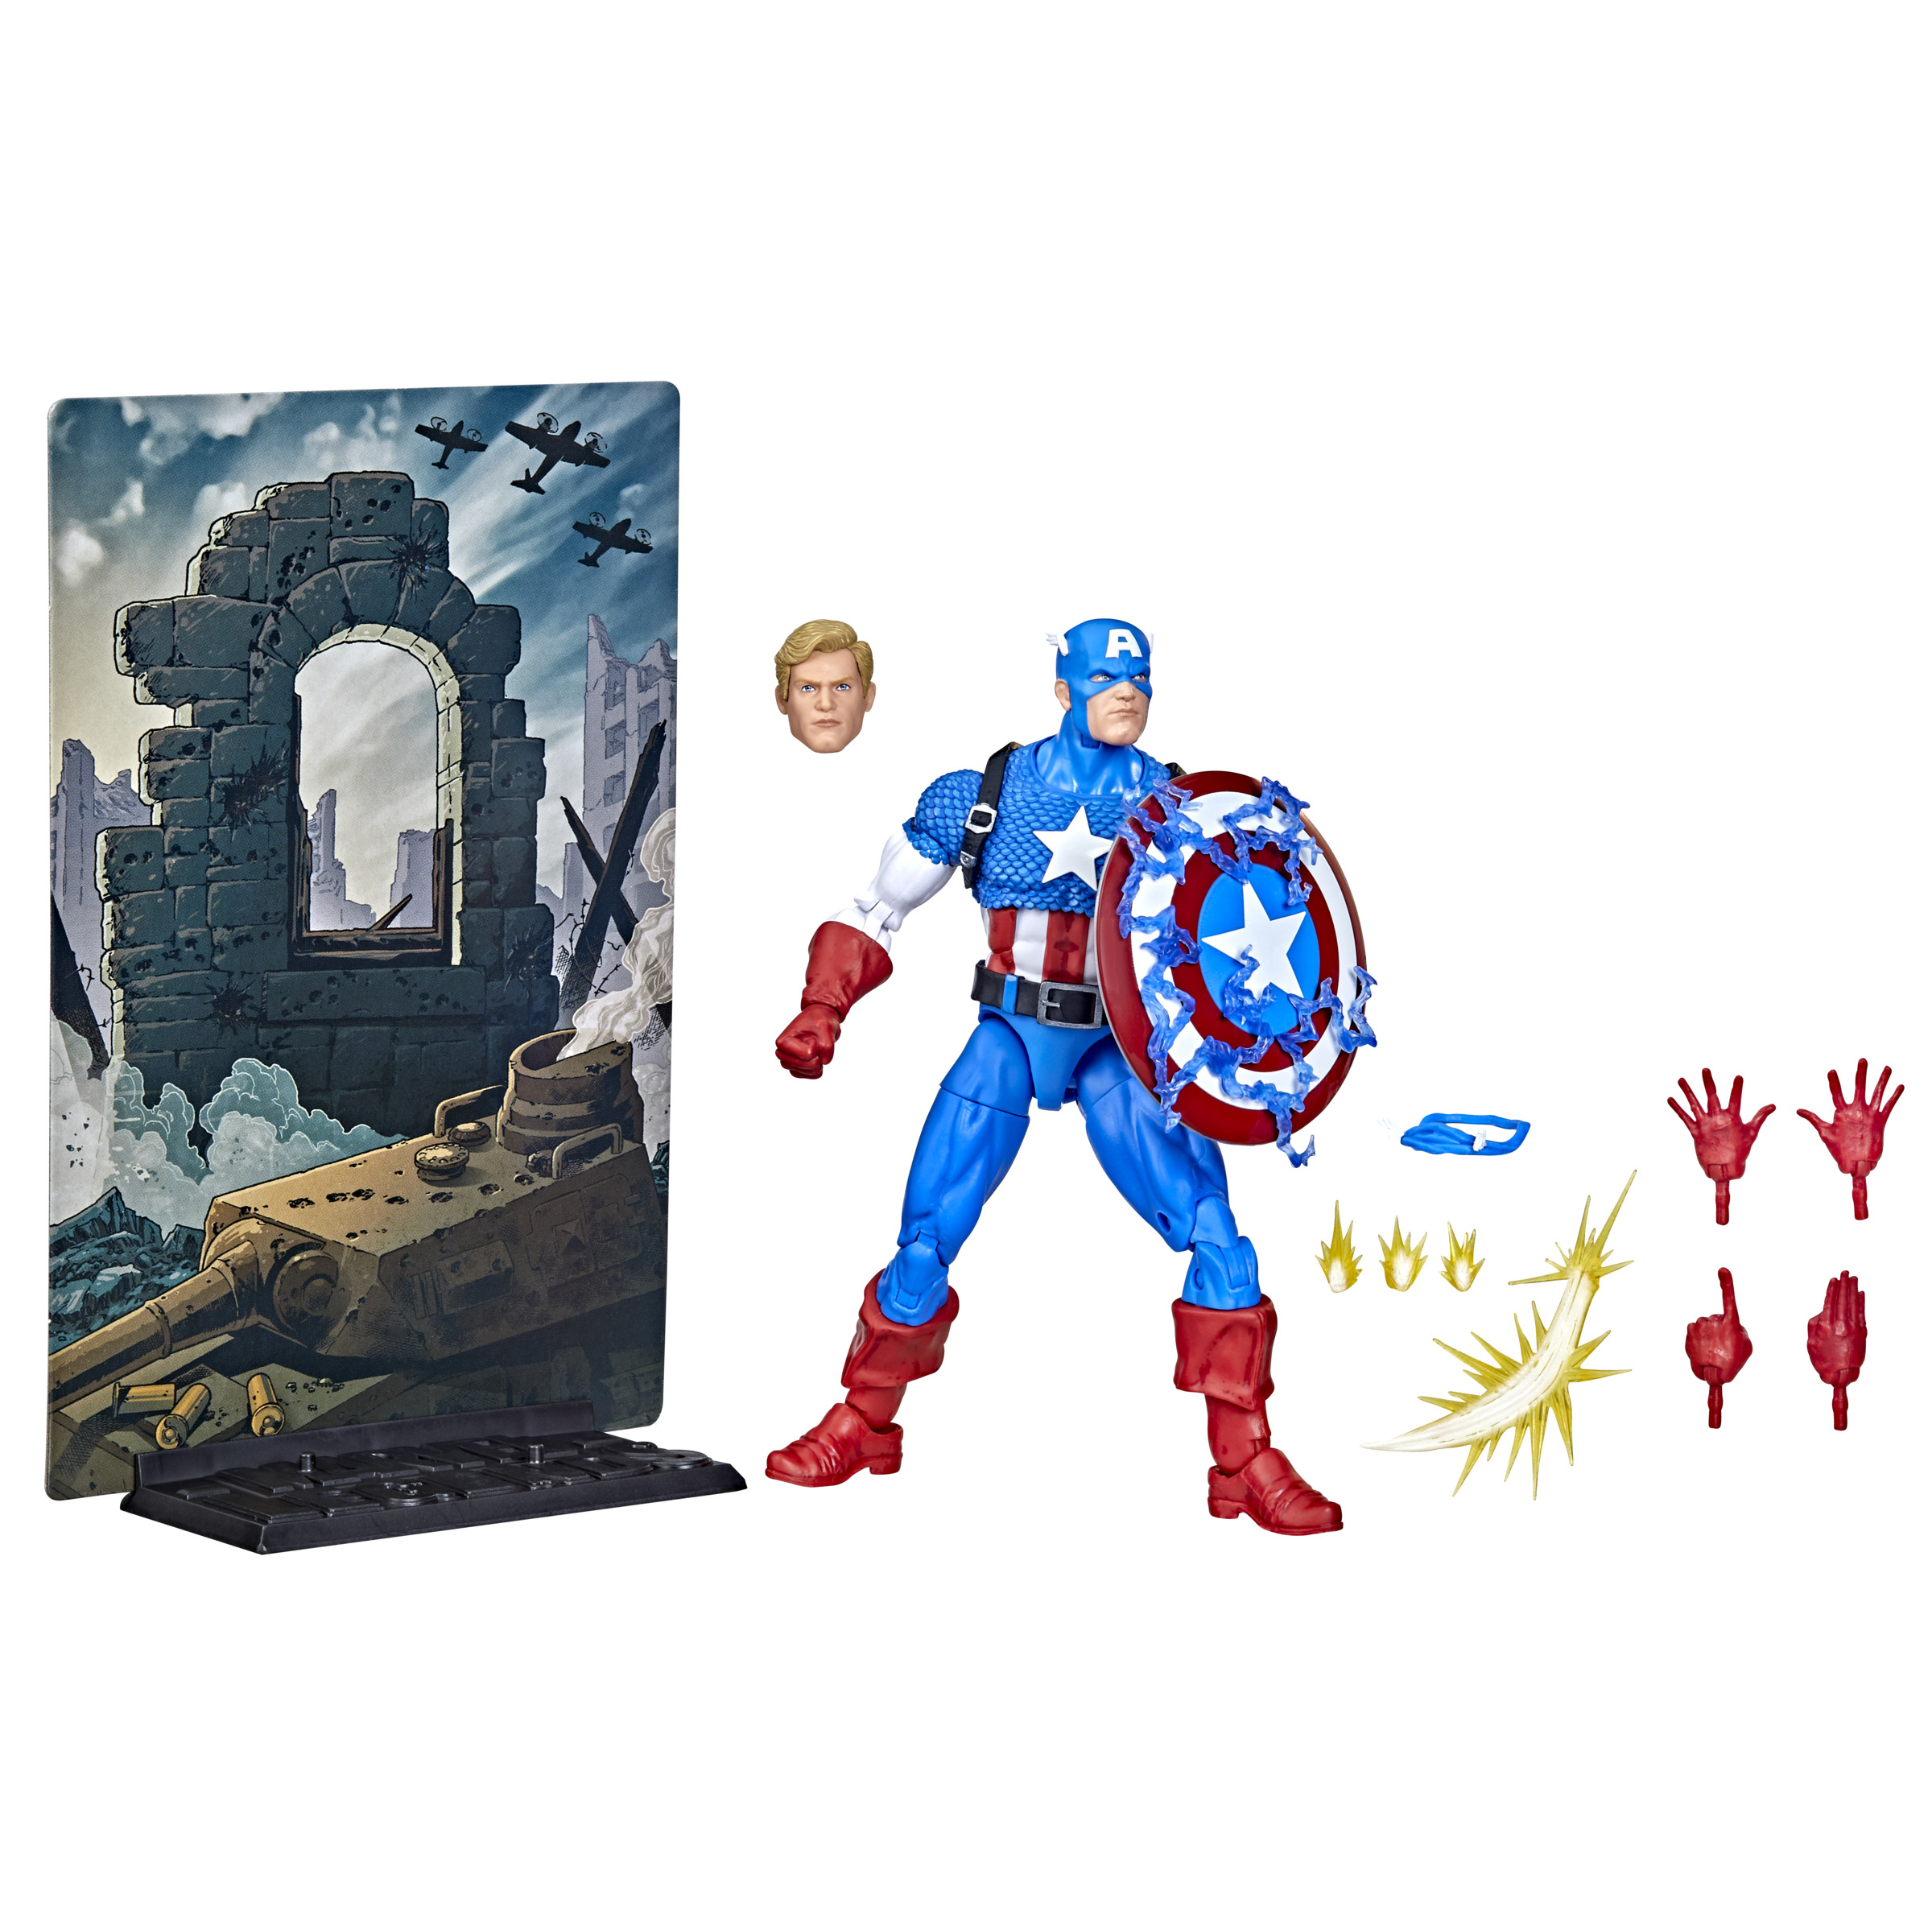 20 Stand base For Marvel Legends Spider-man Hulk Action Figure Toy 